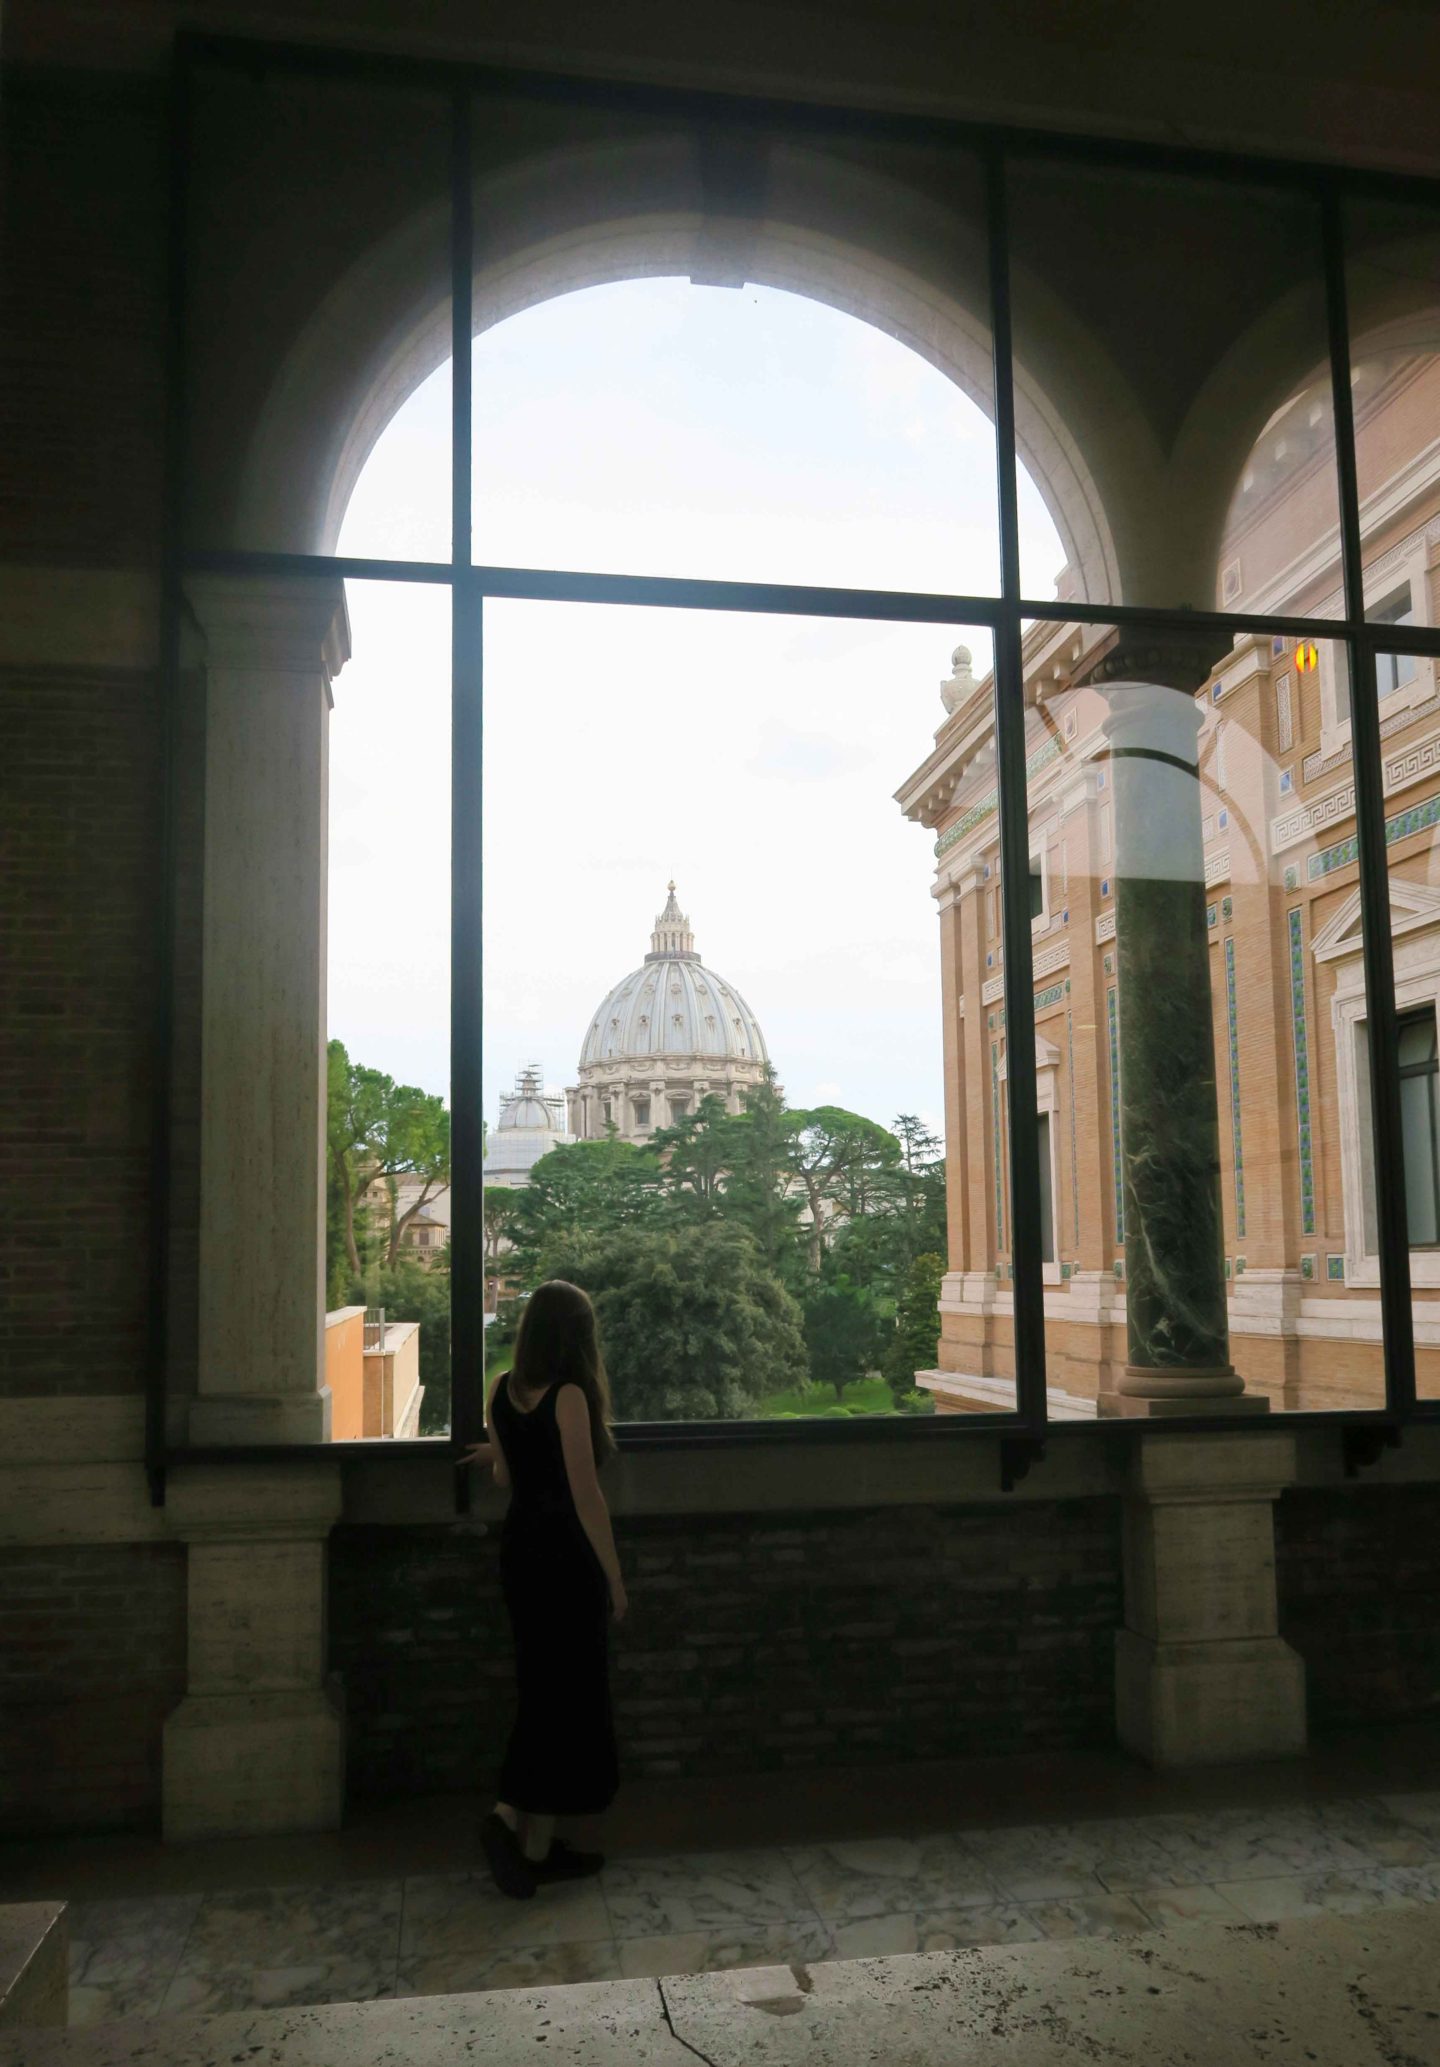 vatican museum window looking at the vatican in rome